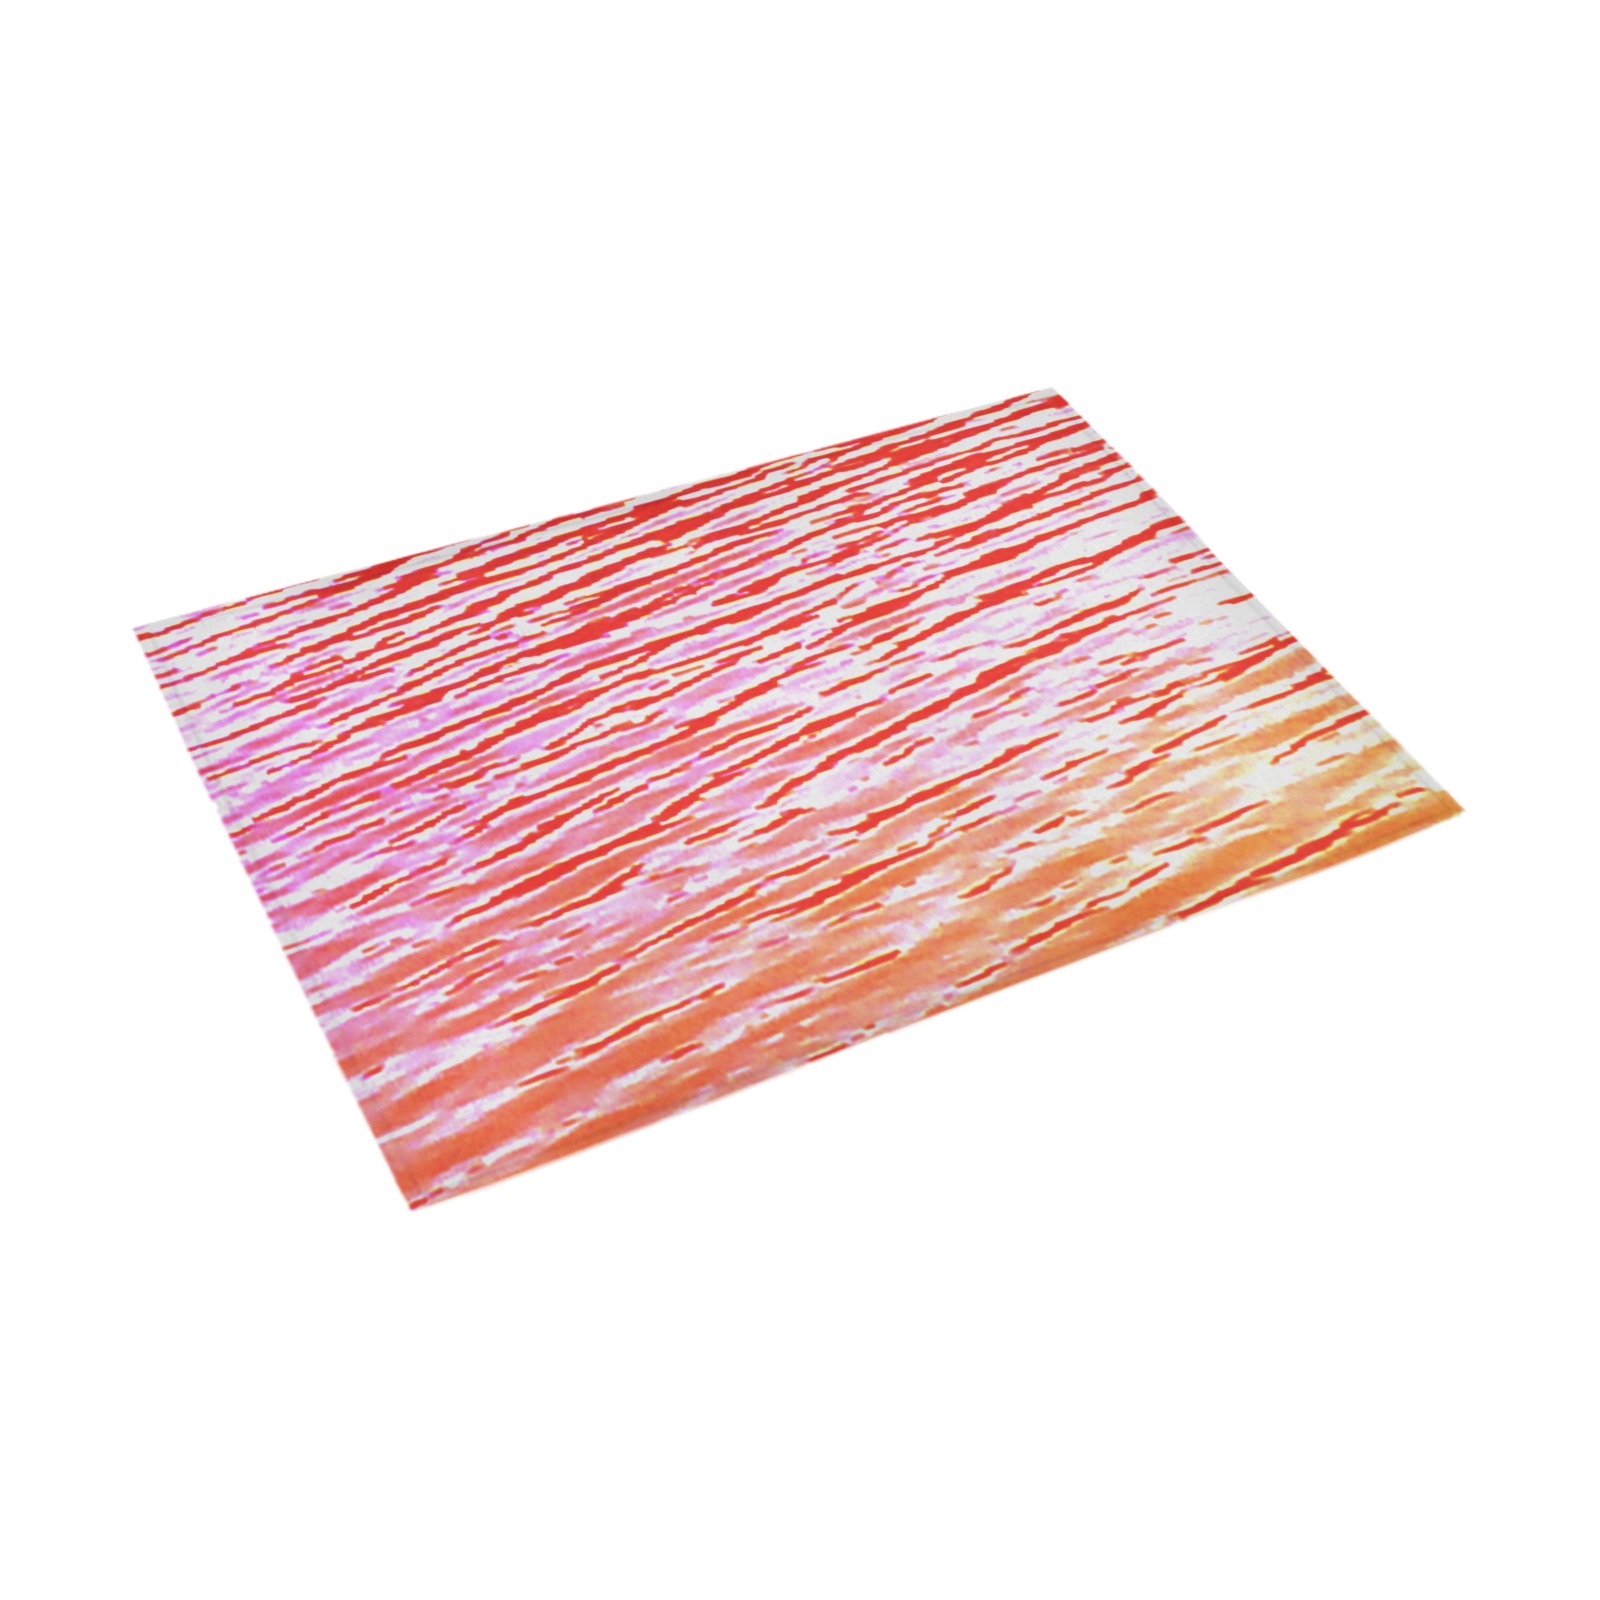 Orange and red water Azalea Doormat 30" x 18" (Sponge Material)